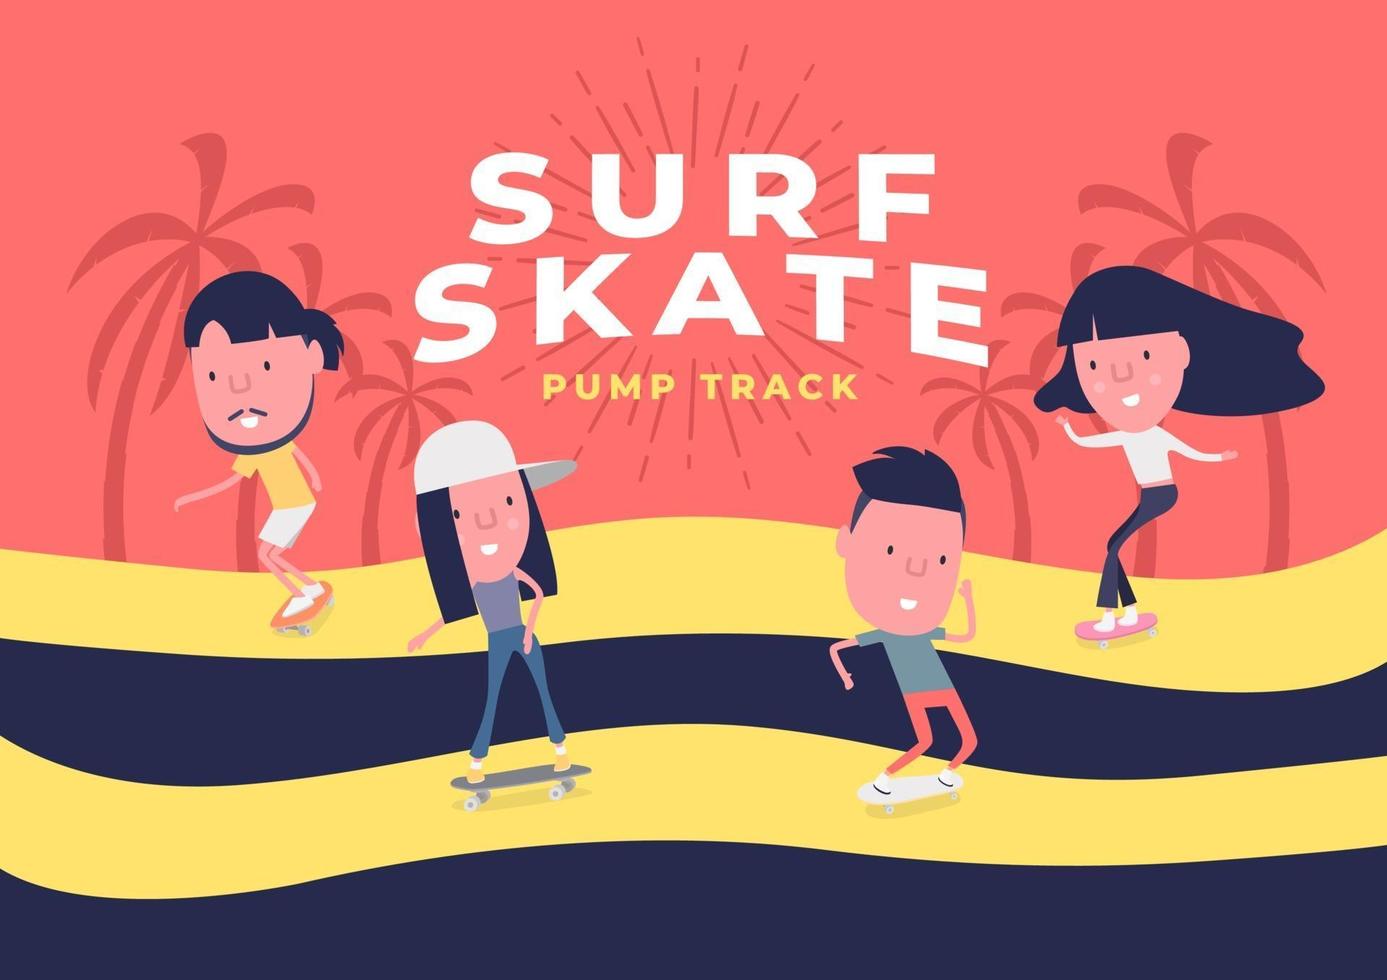 jonge jongen en meisje surfen op skateboard of surf skate. mensen op schaatsen op pomptrack achtergrond. grappig stripfiguur. vector